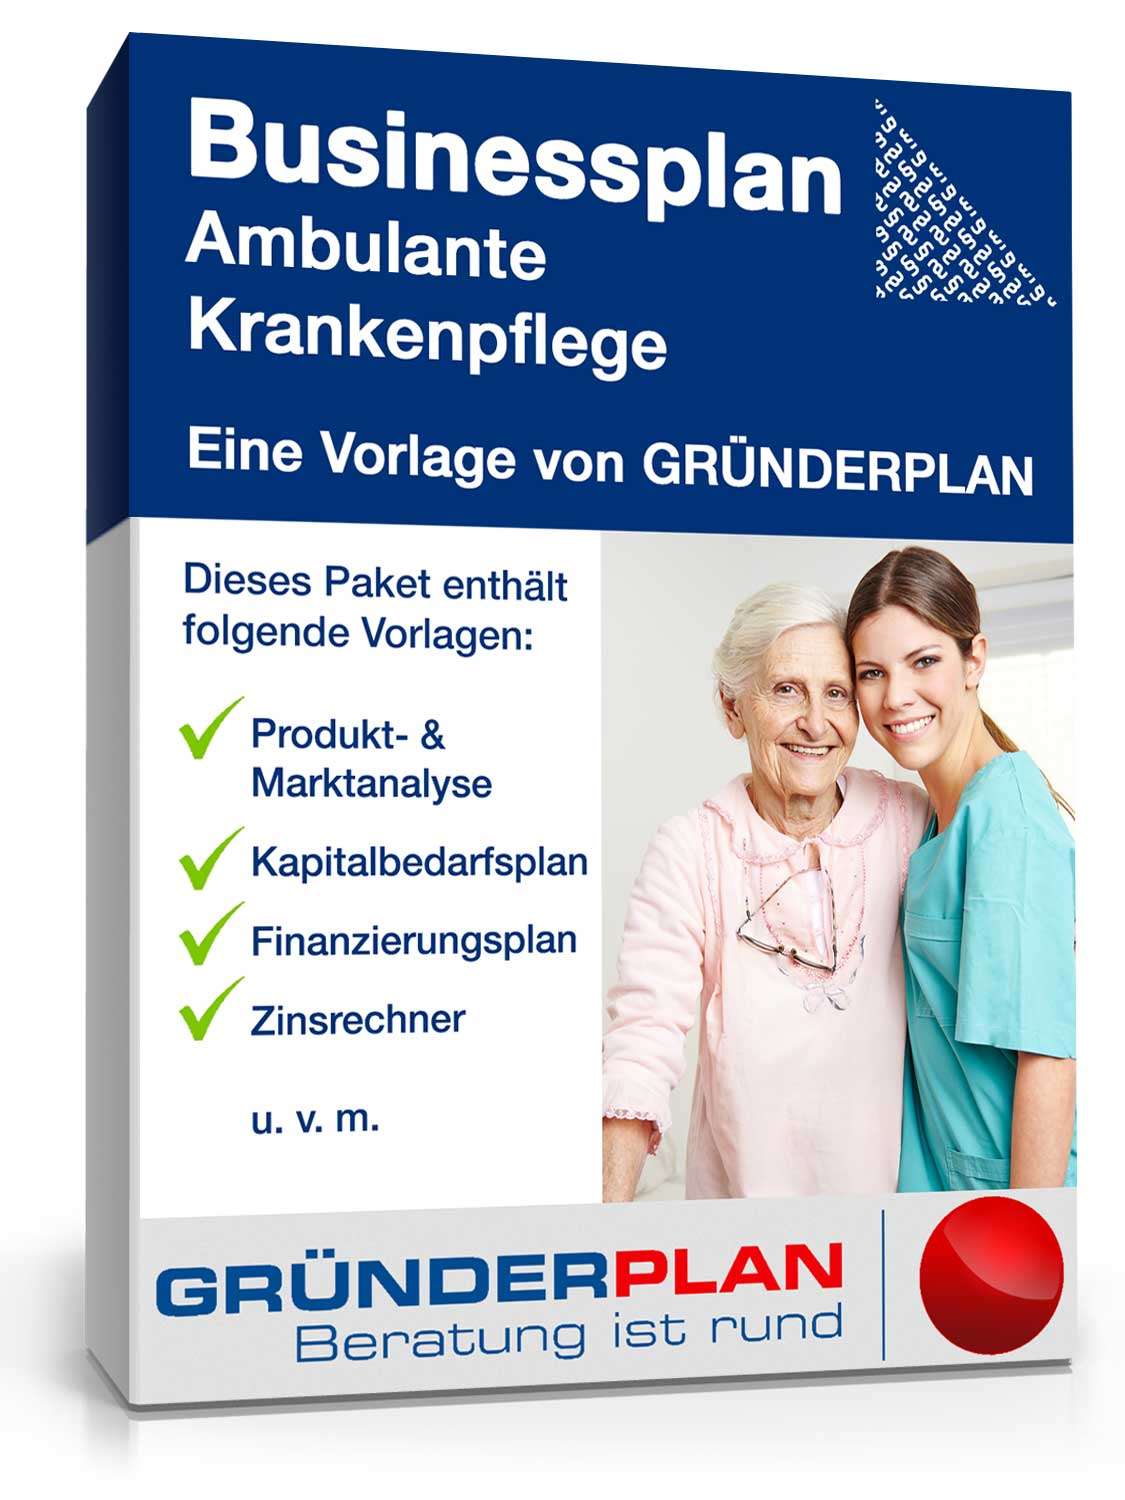 Hauptbild des Produkts: Businessplan Ambulante Krankenpflege von Gründerplan